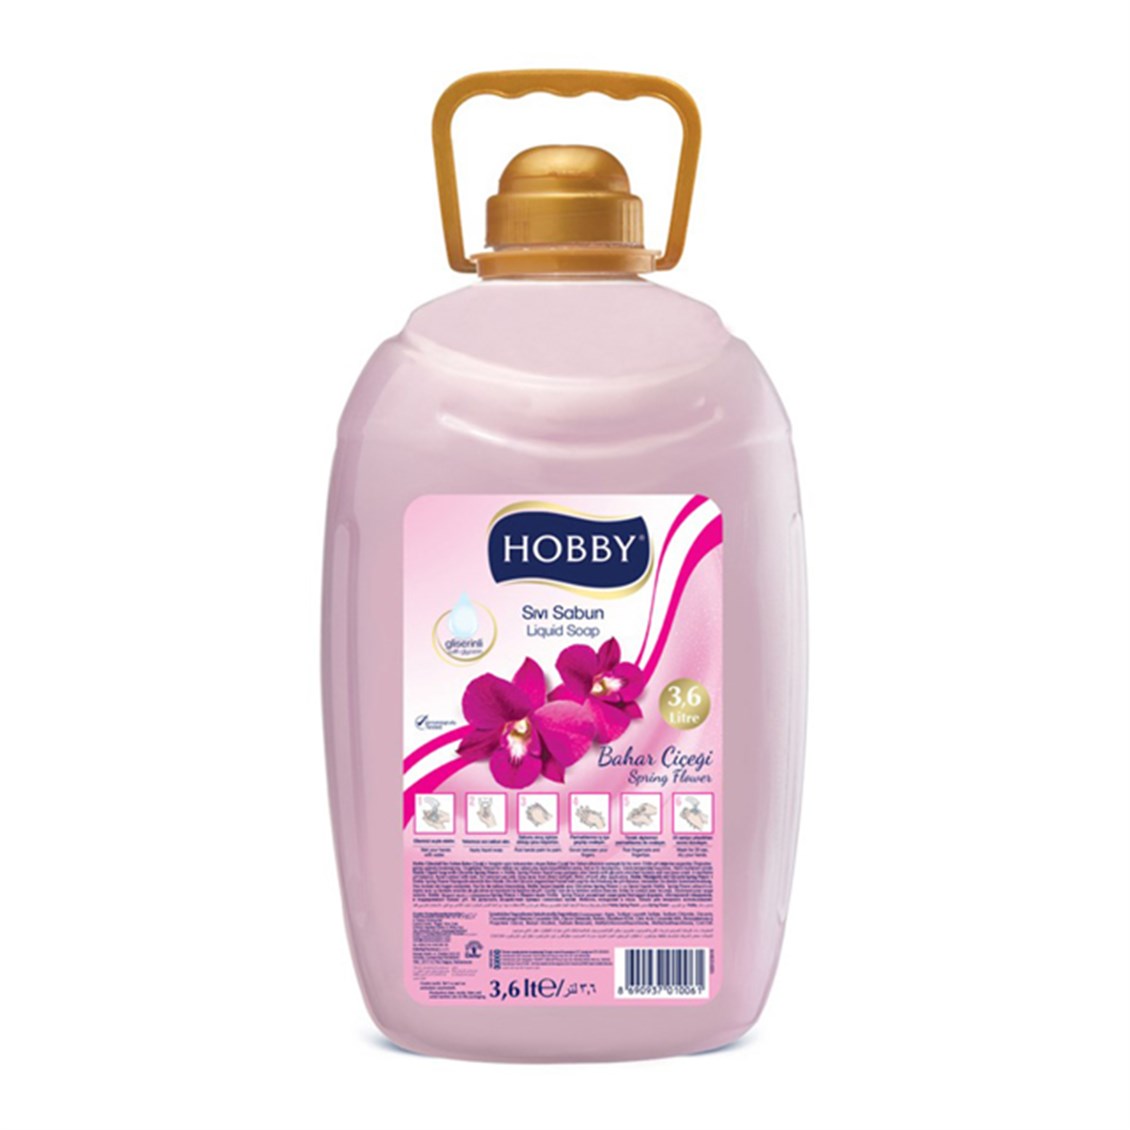 Hobby Sıvı Sabun Bahar Çiçeği 3,6 lt - Onur Market